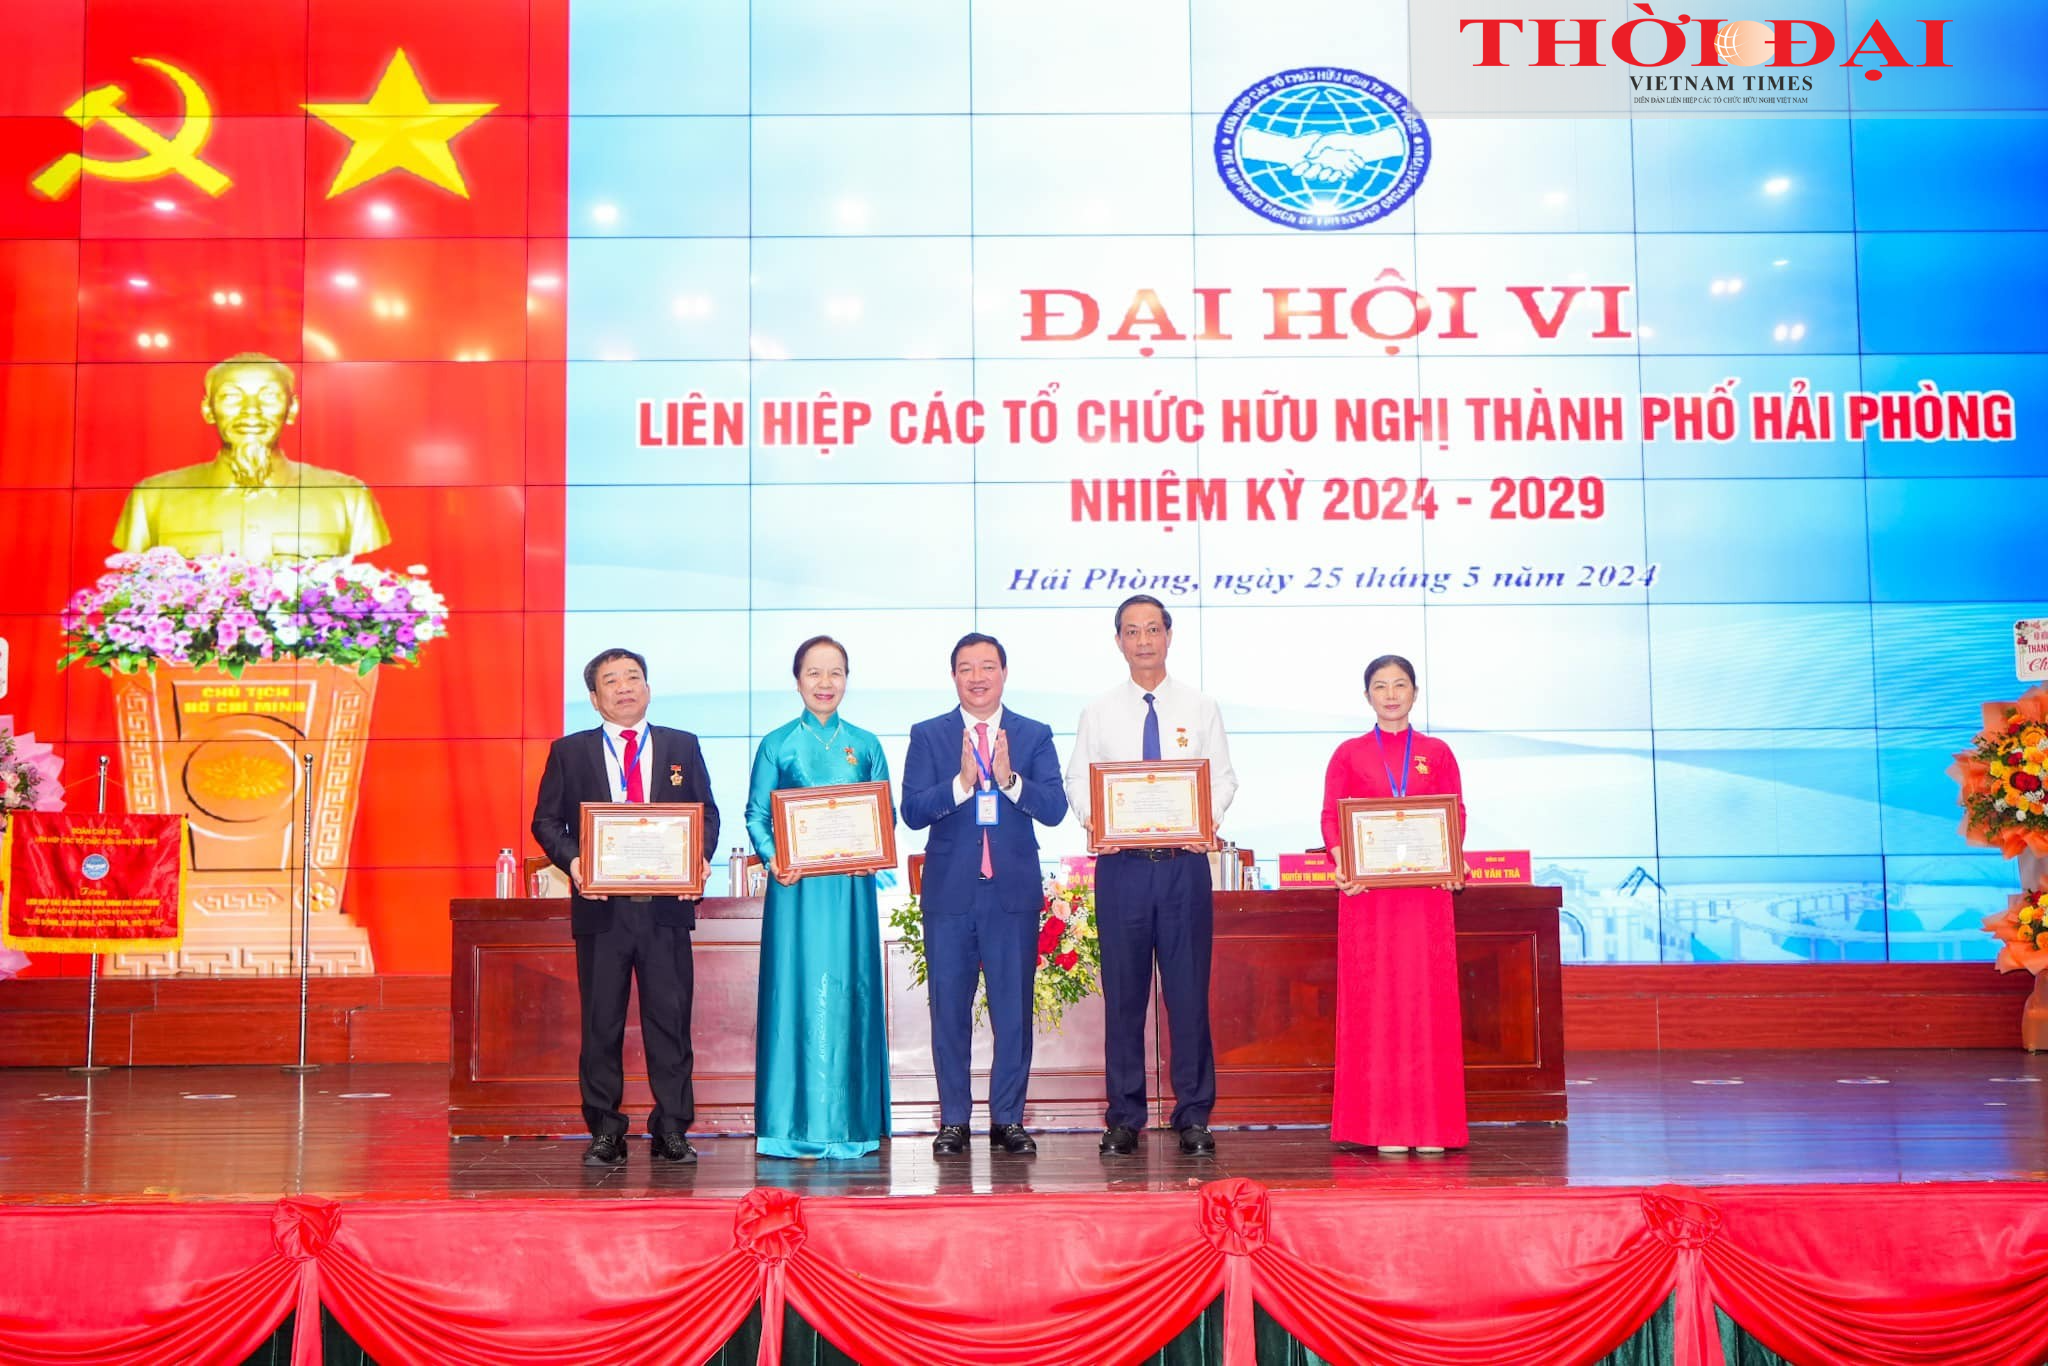 Ông Nguyễn Ngọc Hùng (thứ ba từ trái qua), Phó Chủ tịch Liên hiệp các tổ chức hữu nghị Việt Nam trao tặng Kỷ niệm chương “Vì hòa bình, hữu nghị giữa các dân tộc” cho 4 cá nhân. 